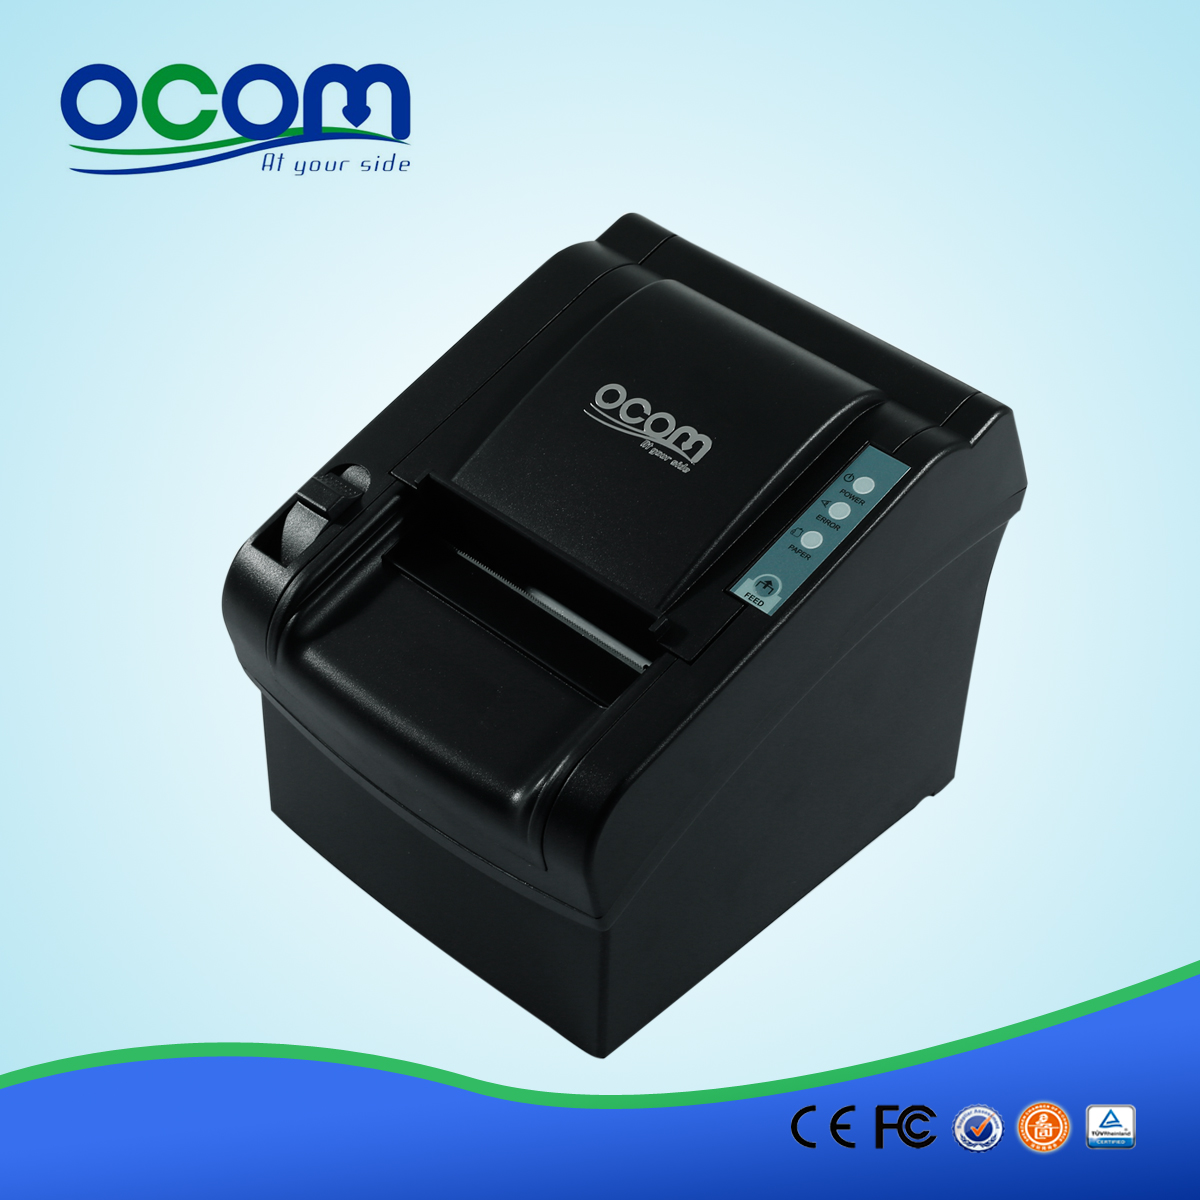 OCPP-802: пос питания завод тепловой 80mm принтер, бумага для принтера тепловой